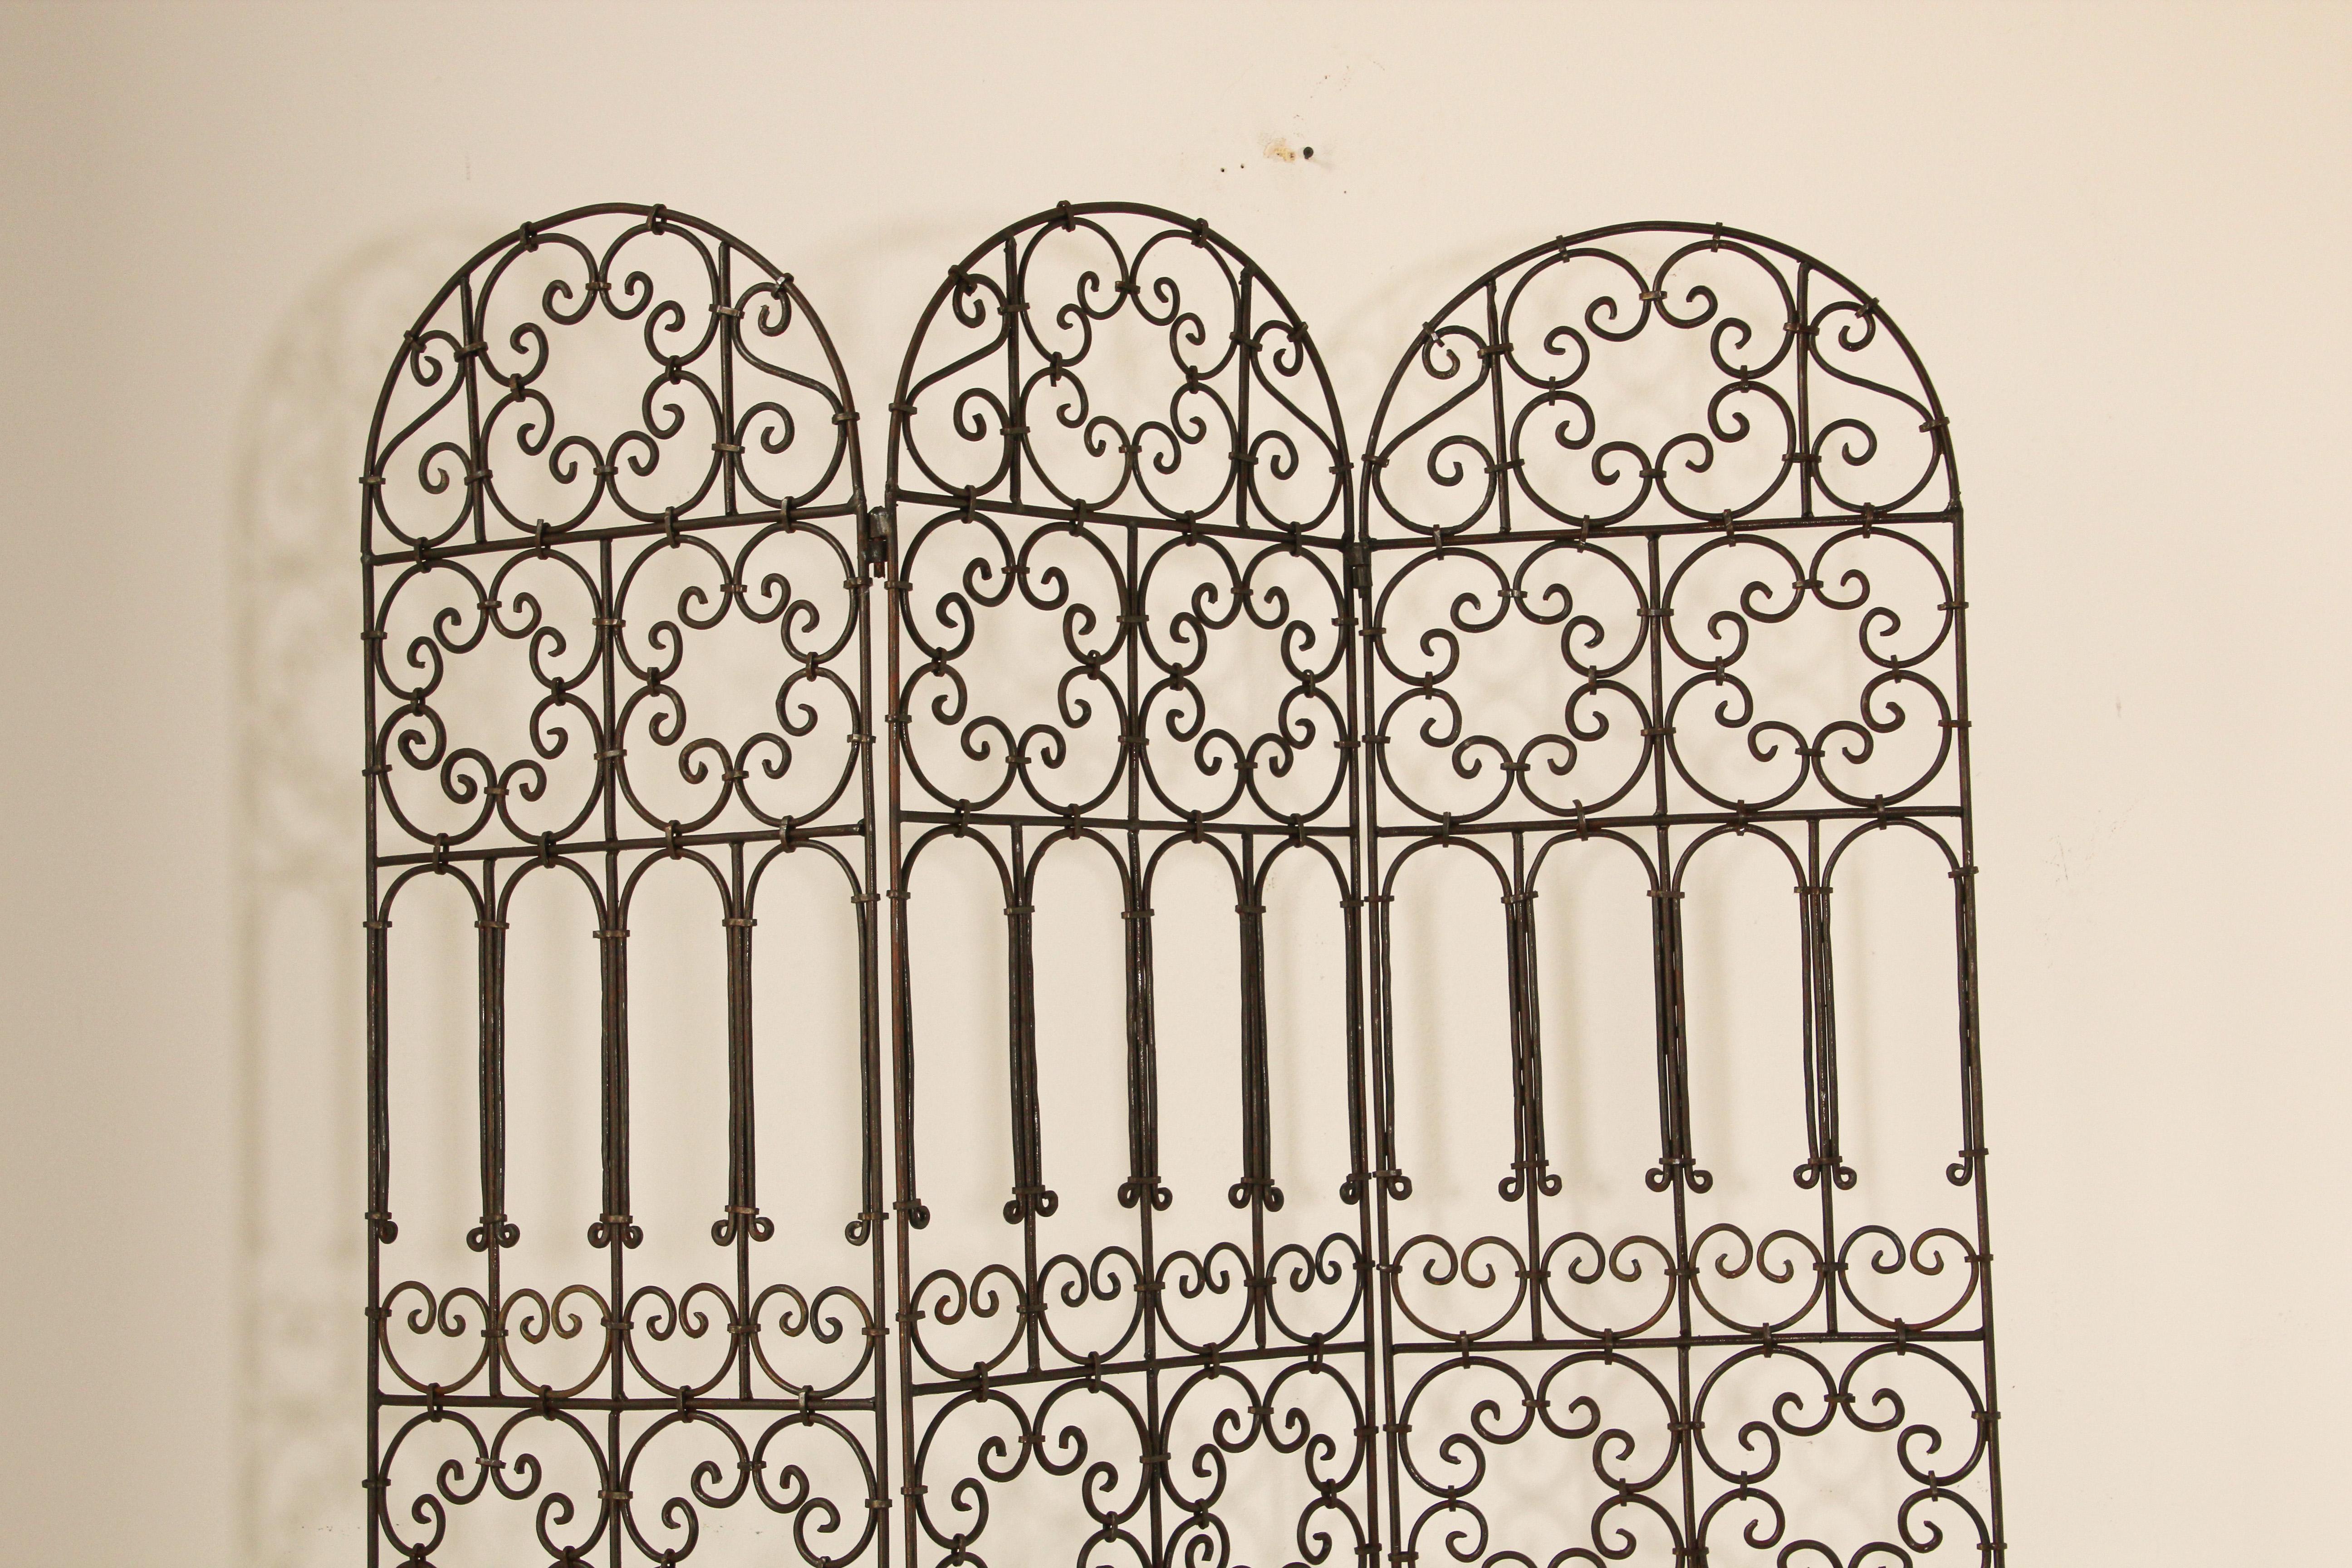 Handgeschmiedeter Paravent aus marokkanischem Eisen mit drei Paneelen, die mit maurischen Motiven verziert sind.
Dieser klassische und elegante Art & Craft Paravent im mediterranen, spanischen Stil mit detaillierten Eisenarbeiten würde jeden Raum,